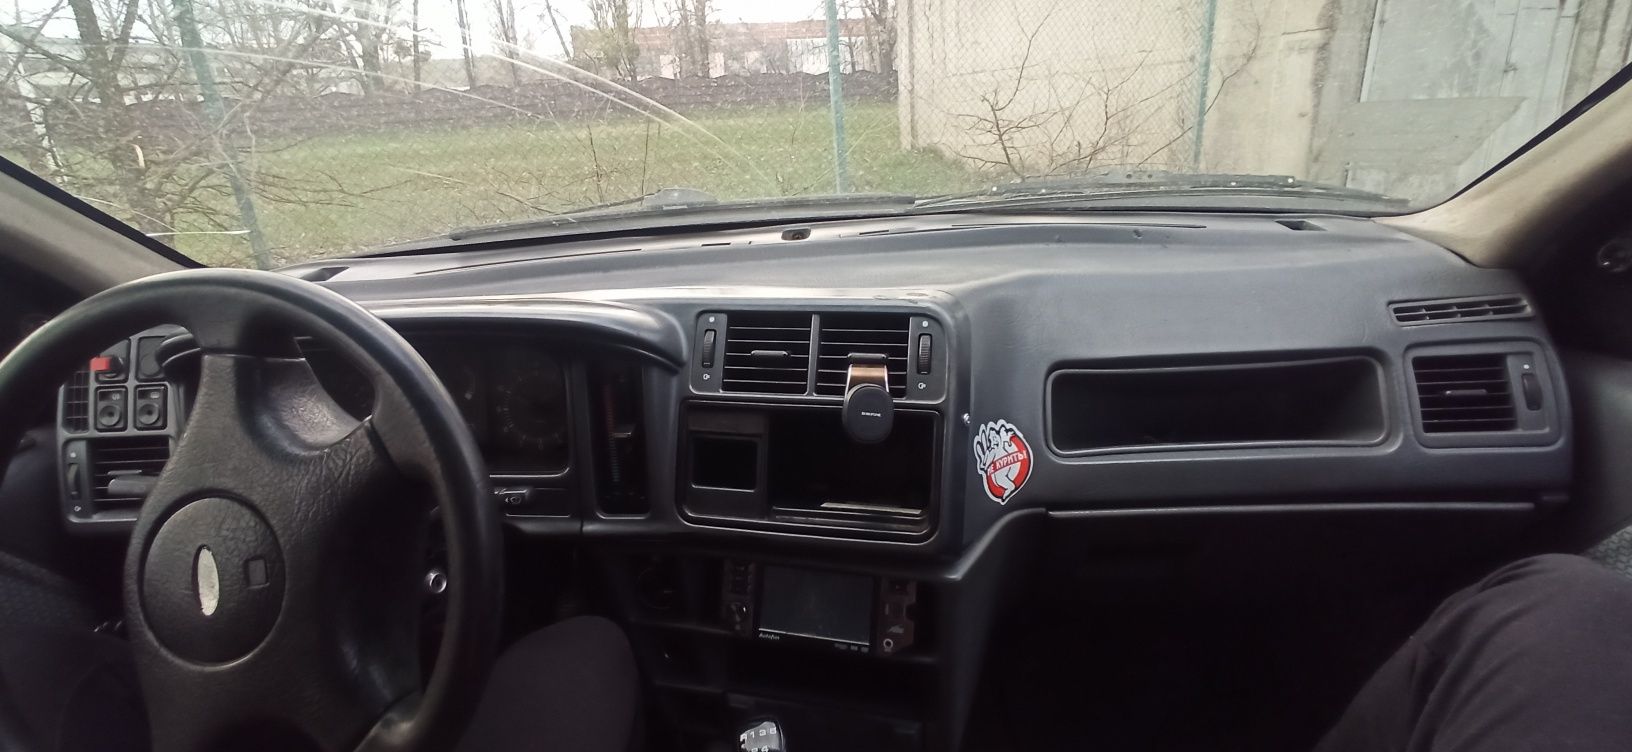 Ford Sierra 1.6 1992р по ТП